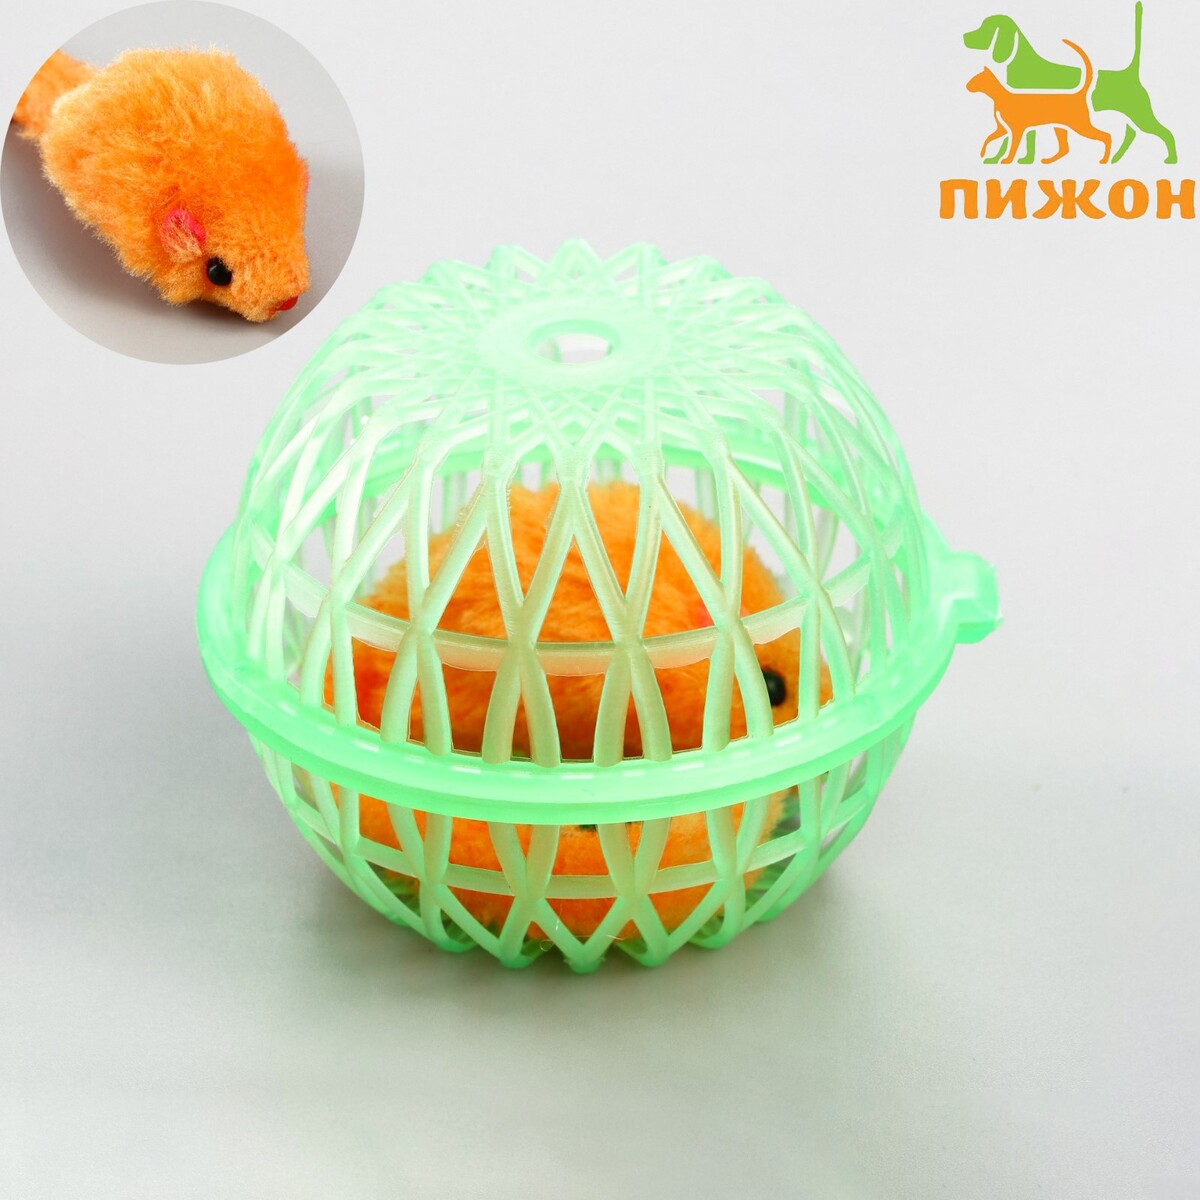 Мышь в пластиковом шаре, 7 х 5 см, зеленый шар/оранжевая мышь мышь в пластиковом шаре 7 х 5 см зеленый шар оранжевая мышь